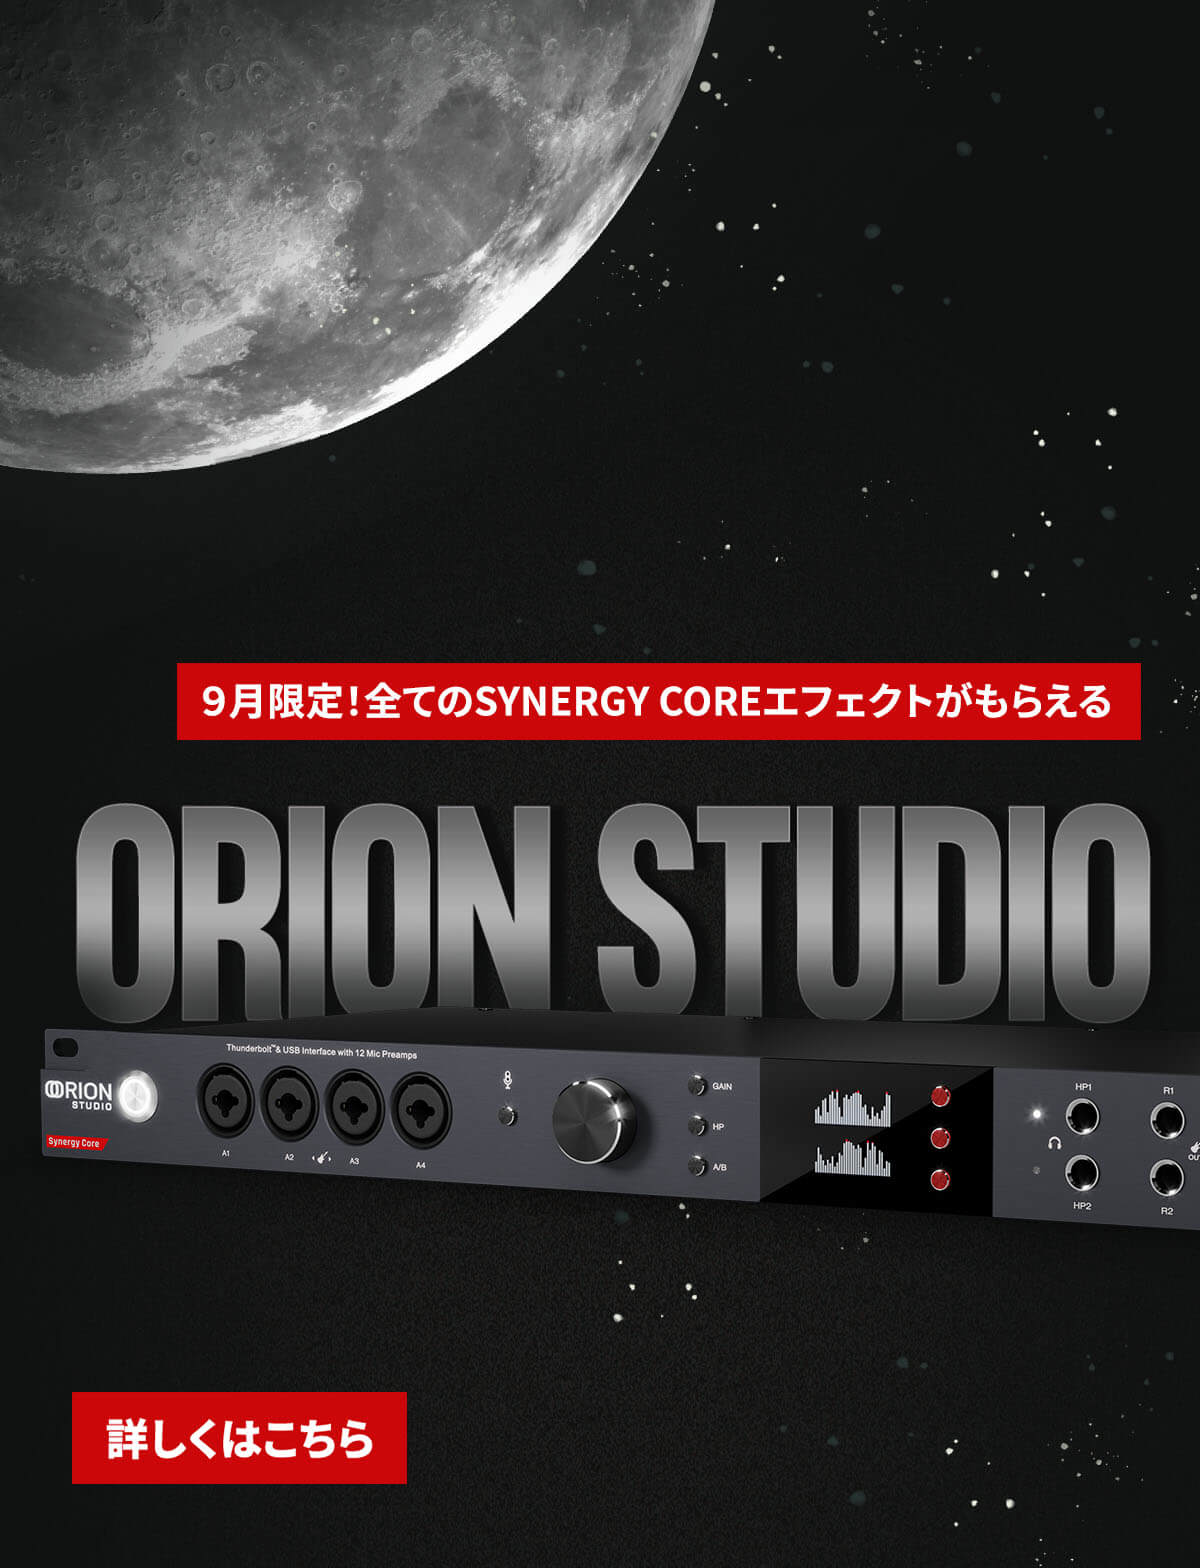 Orion studio Sept JP mob banner